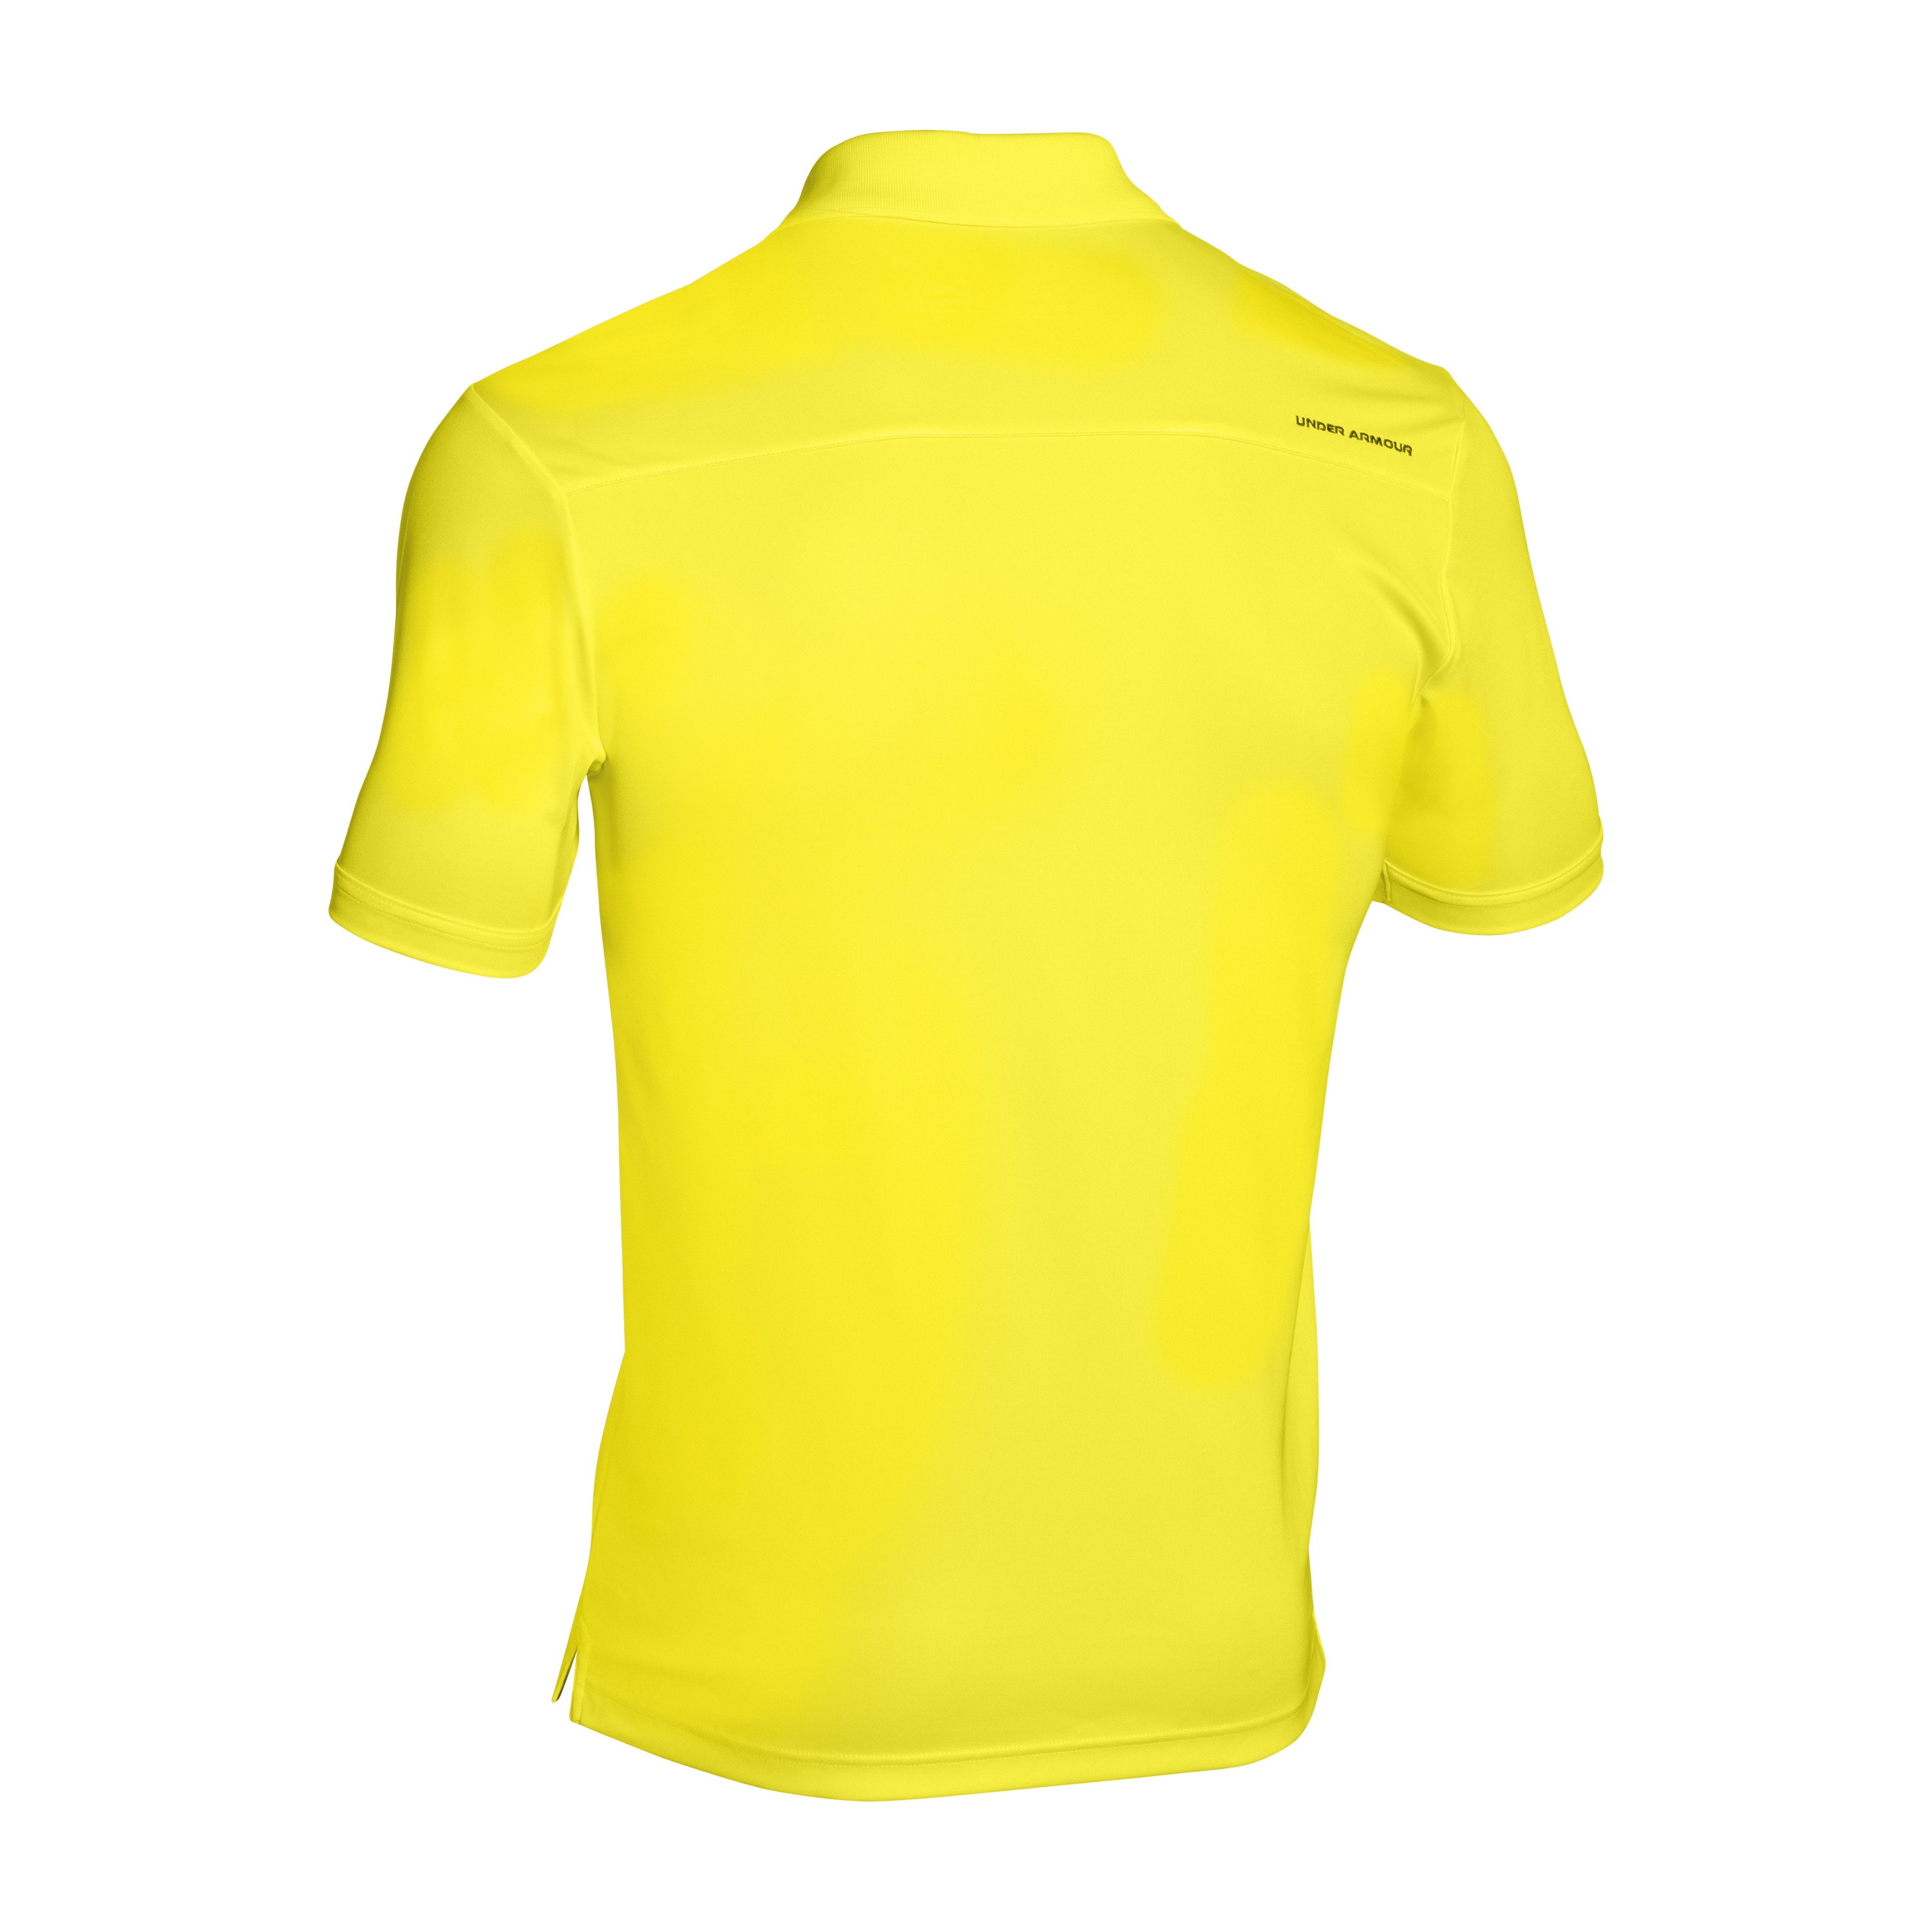 Armour Polo Shirt 2.0 yellow | Under Armour Polo Shirt Performance yellow | Polo Shirts | Shirts | Men | Clothing